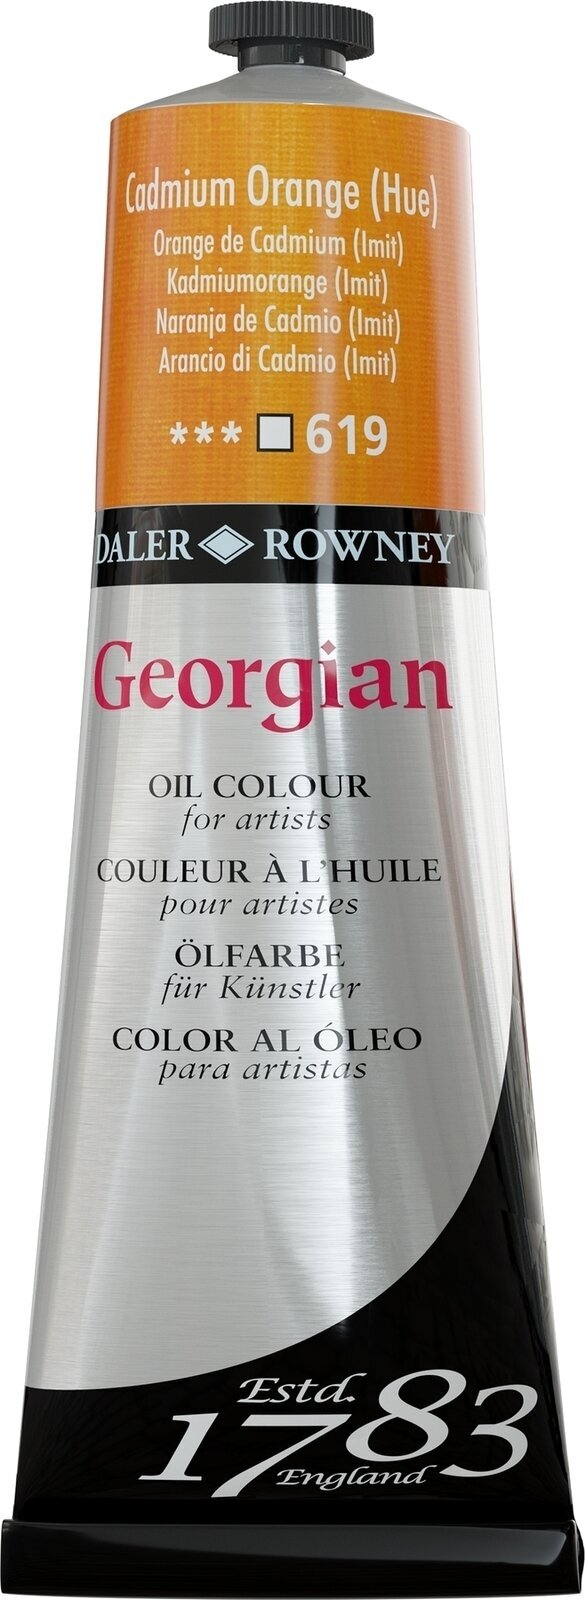 Aceite de colores Daler Rowney Georgian Oil Paint Cadmium Orange Hue 225 ml 1 pc